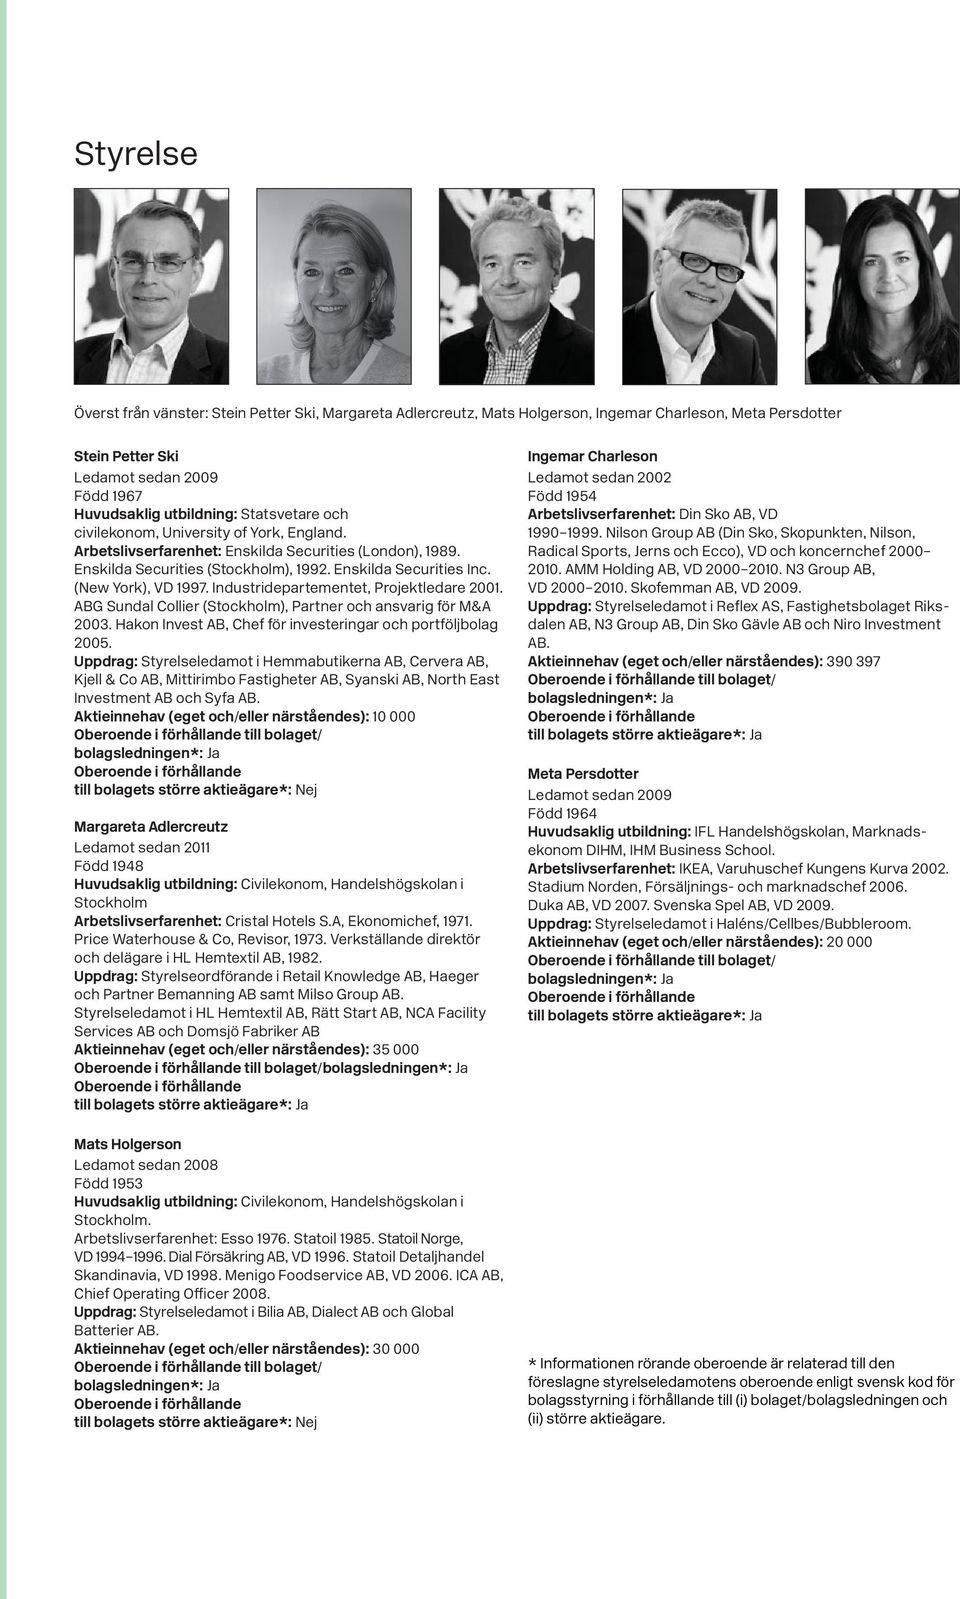 Industridepartementet, Projektledare 2001. ABG Sundal Collier (Stockholm), Partner och ansvarig för M&A 2003. Hakon Invest AB, Chef för investeringar och portföljbolag 2005.